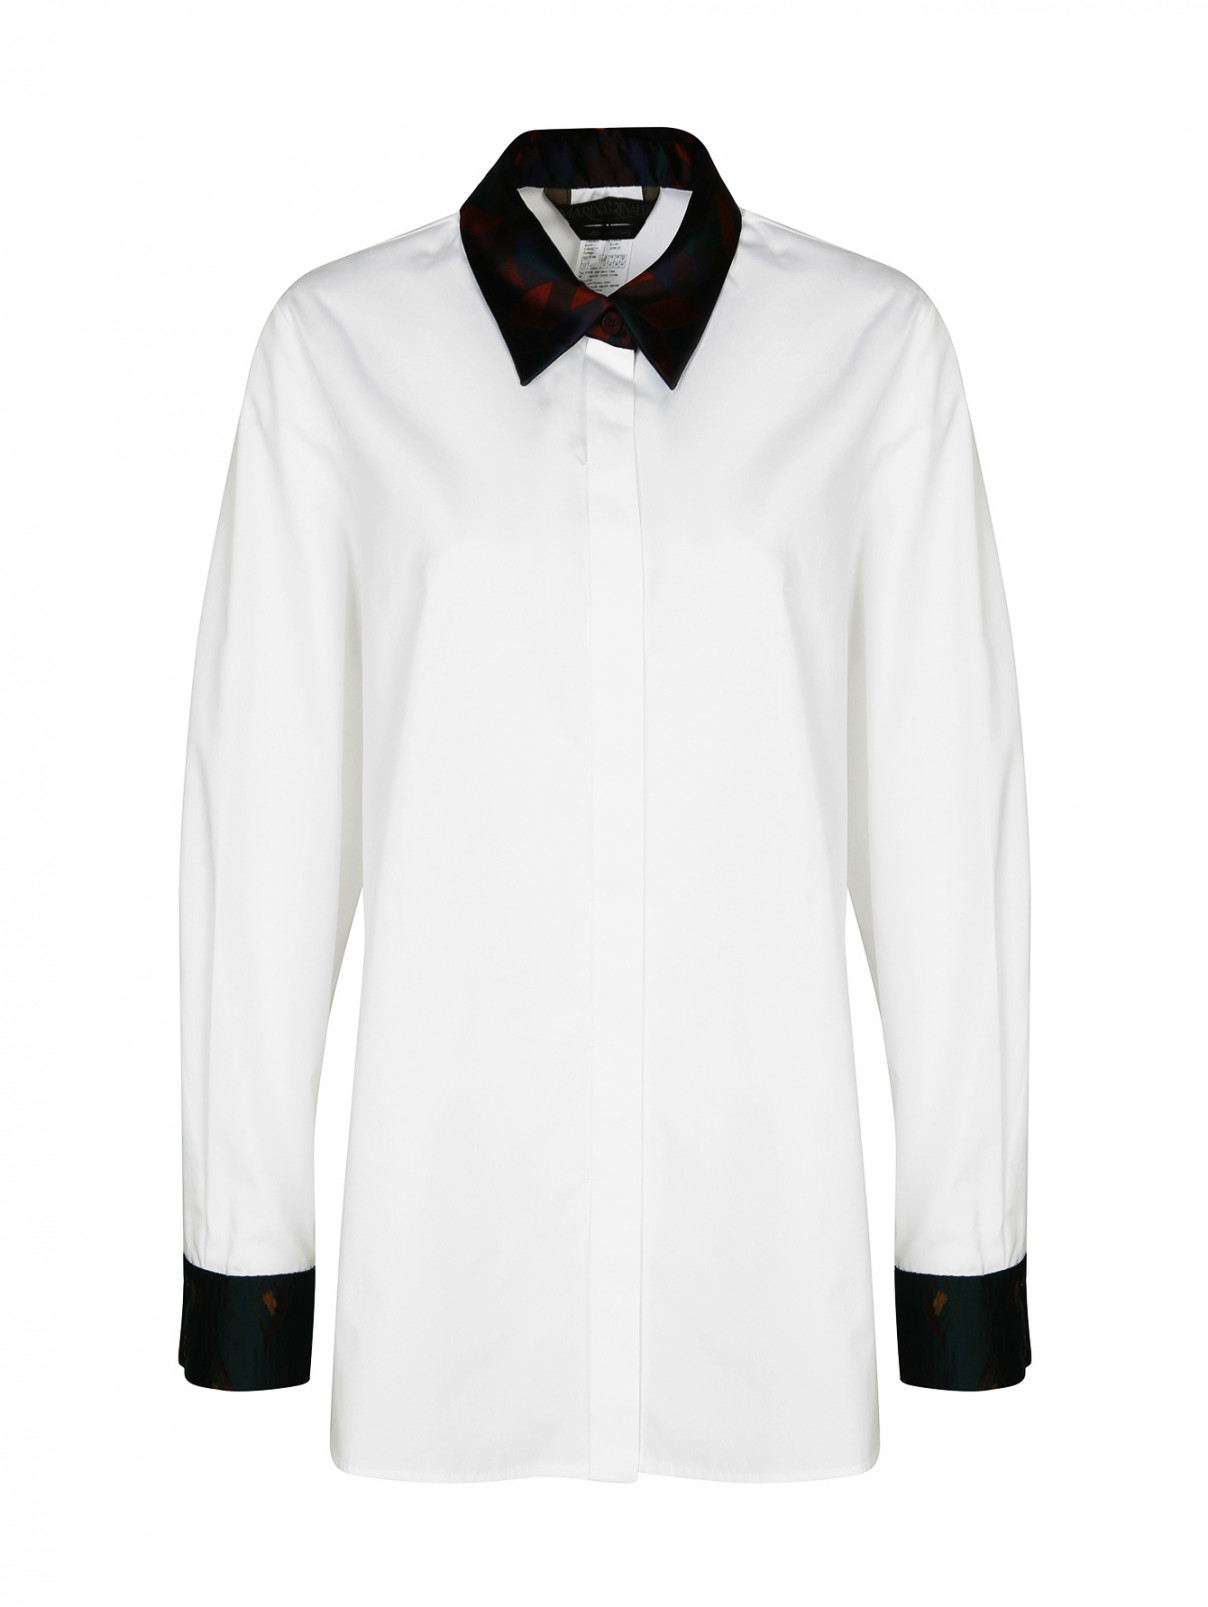 Рубашка хлопковая с контрастным воротником Marina Rinaldi  –  Общий вид  – Цвет:  Белый